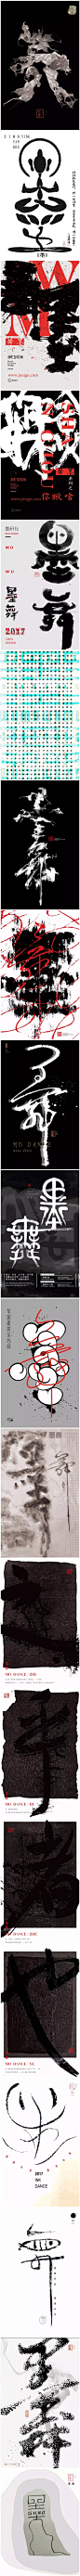 中国风|H5|海报|创意|白墨广告|字体设计|书法字体|书法|海报|创意设计|版式设计|黄陵野鹤|墨研社|字魔营
www.icccci.com